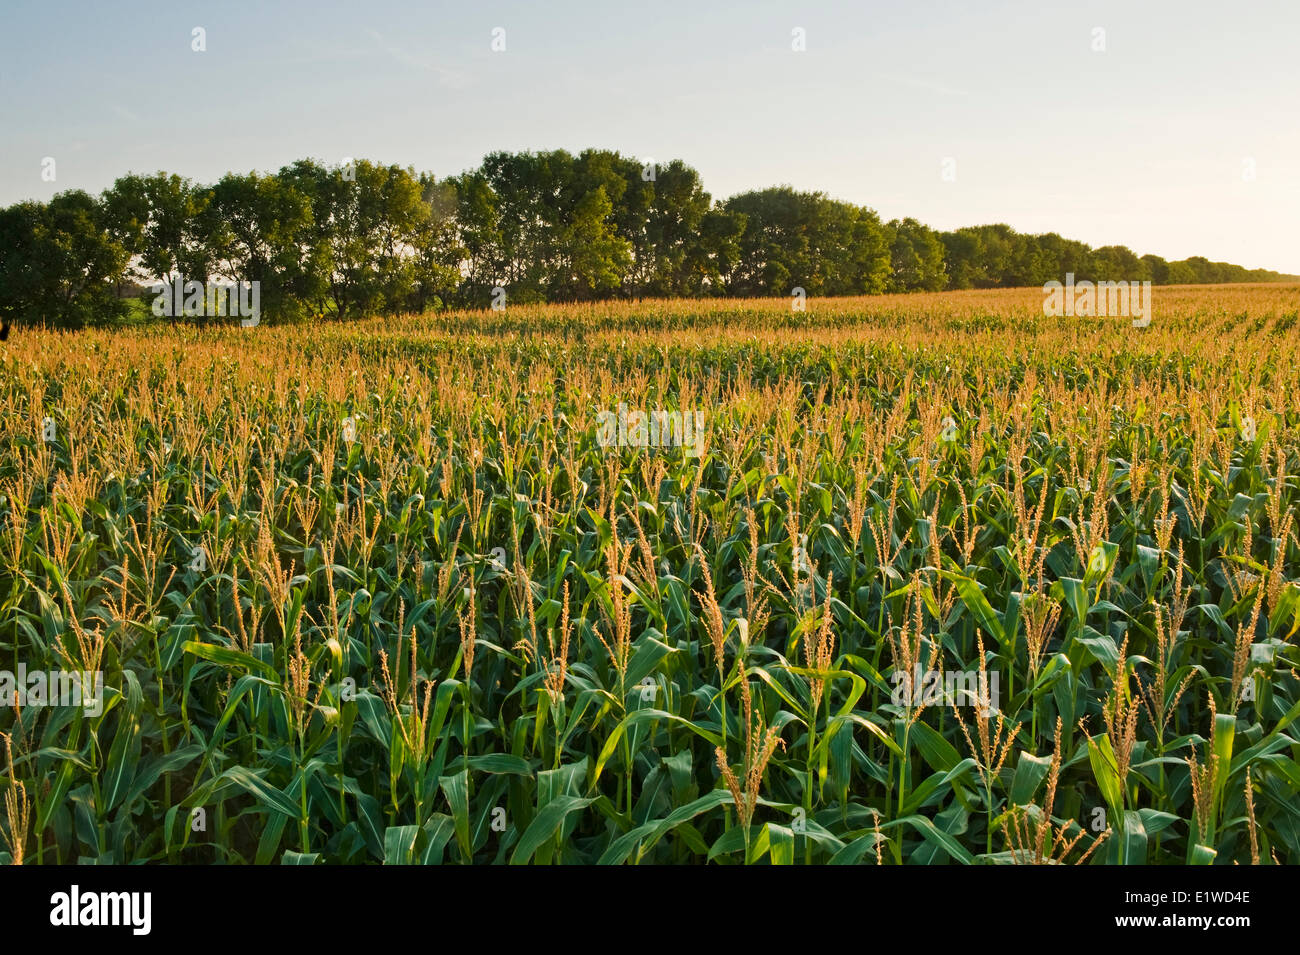 El grano de maíz (maíz) piensos campo con shelterbelt en segundo plano, cerca de Niverville , Manitoba, Canadá Foto de stock